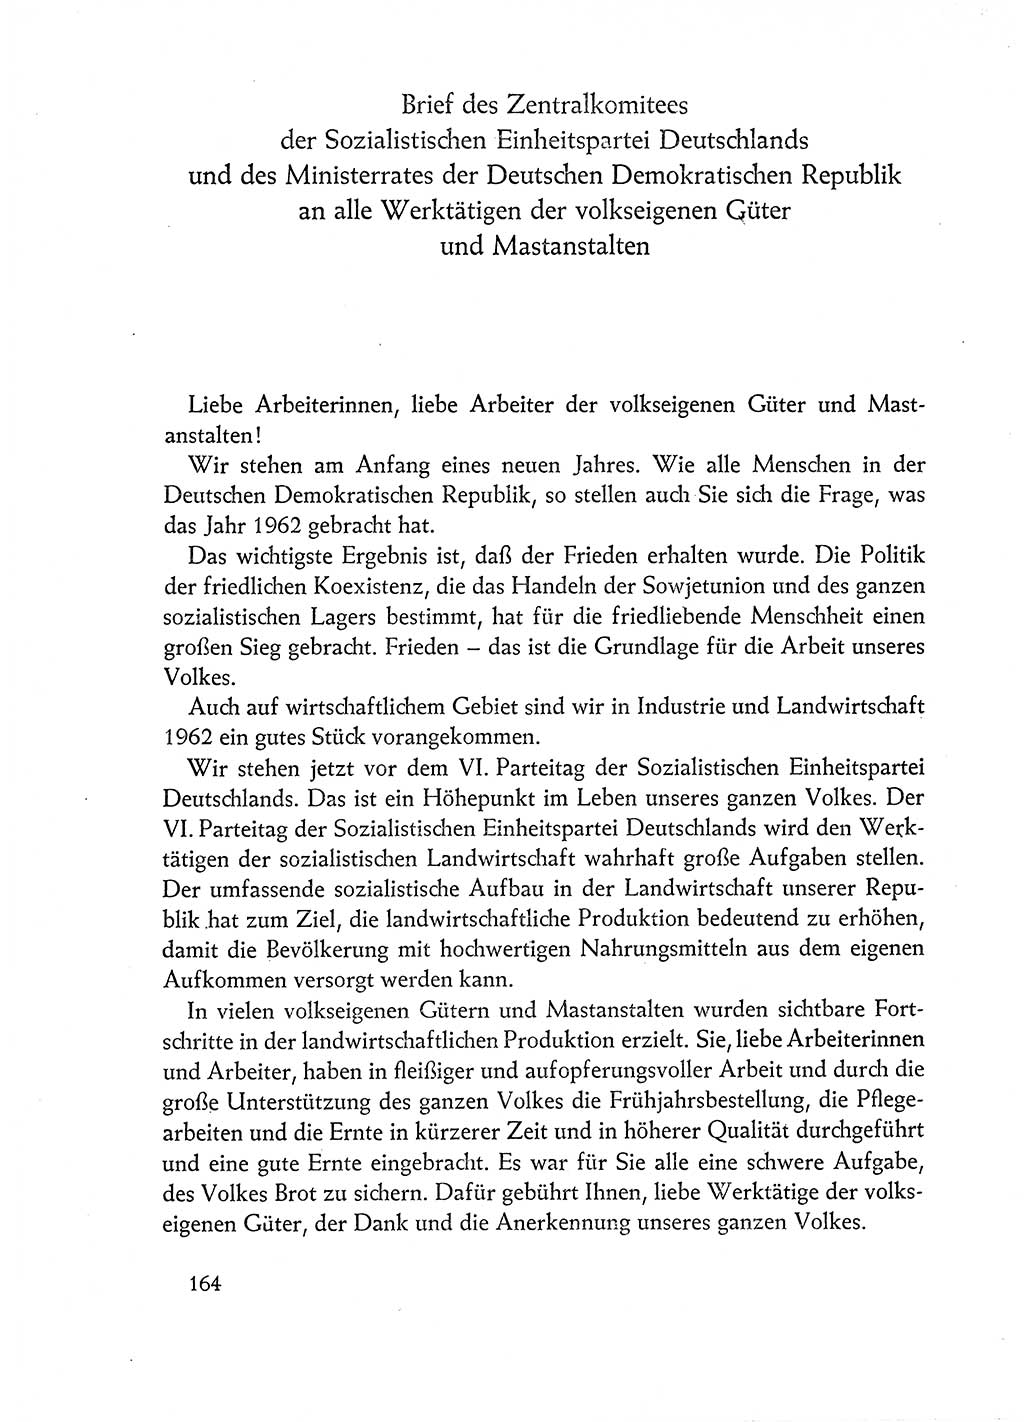 Dokumente der Sozialistischen Einheitspartei Deutschlands (SED) [Deutsche Demokratische Republik (DDR)] 1962-1963, Seite 164 (Dok. SED DDR 1962-1963, S. 164)